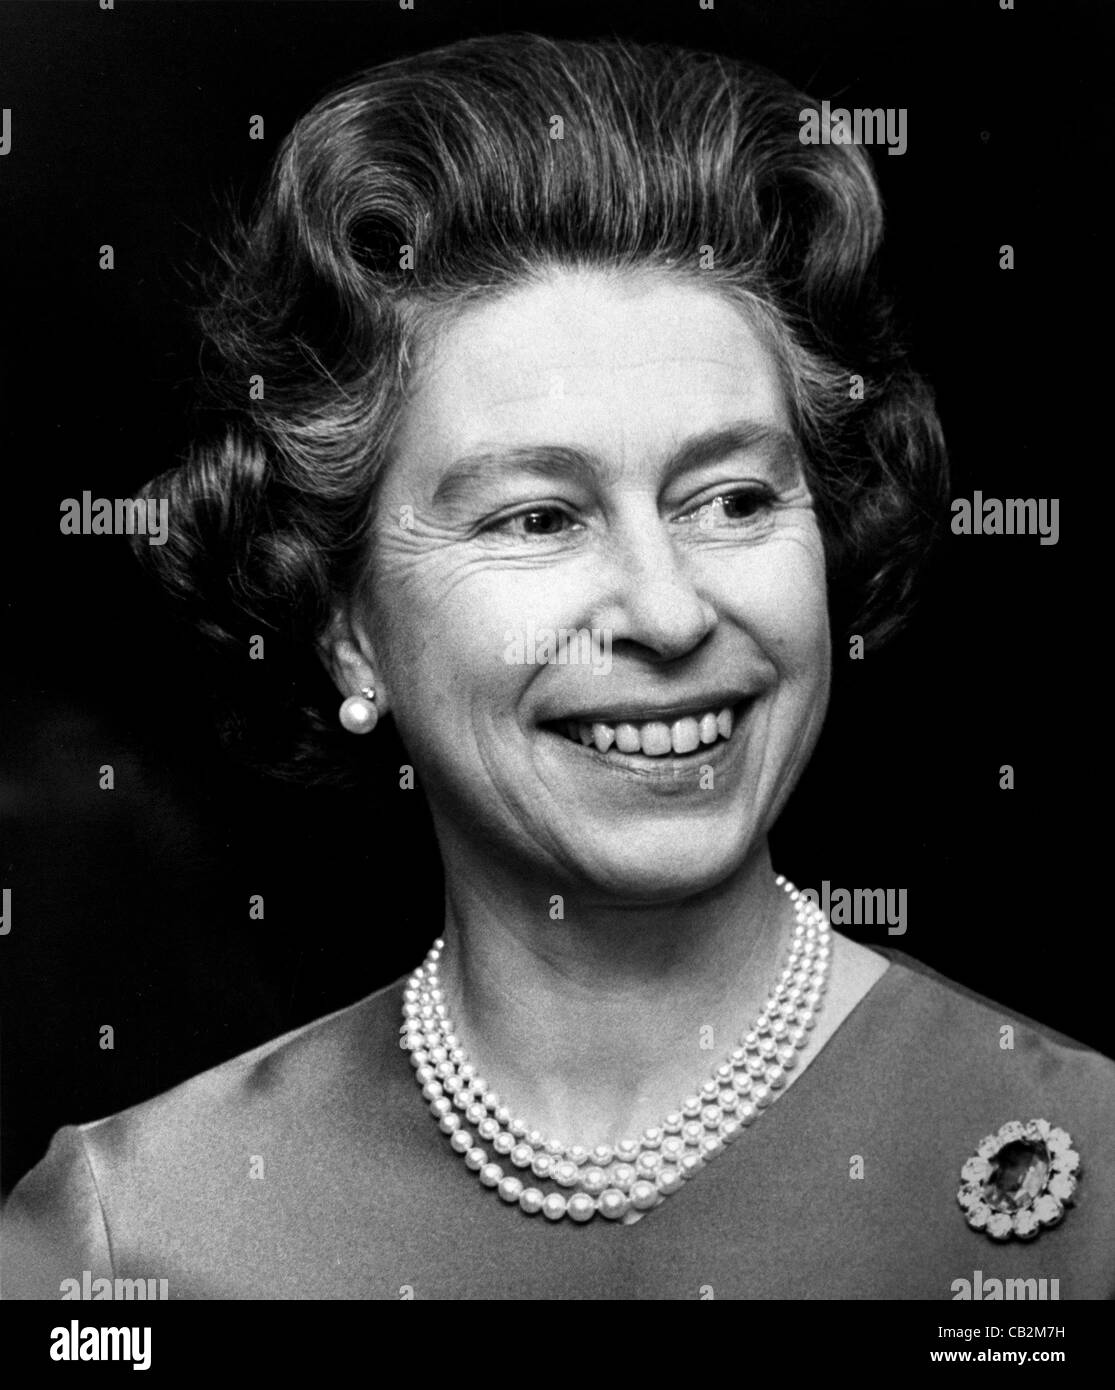 Sa Majesté la Reine Elizabeth II lors d'une fonction semi-formelle en 1975 Droits d'auteur détenus par photographie Brian Harris. Banque D'Images